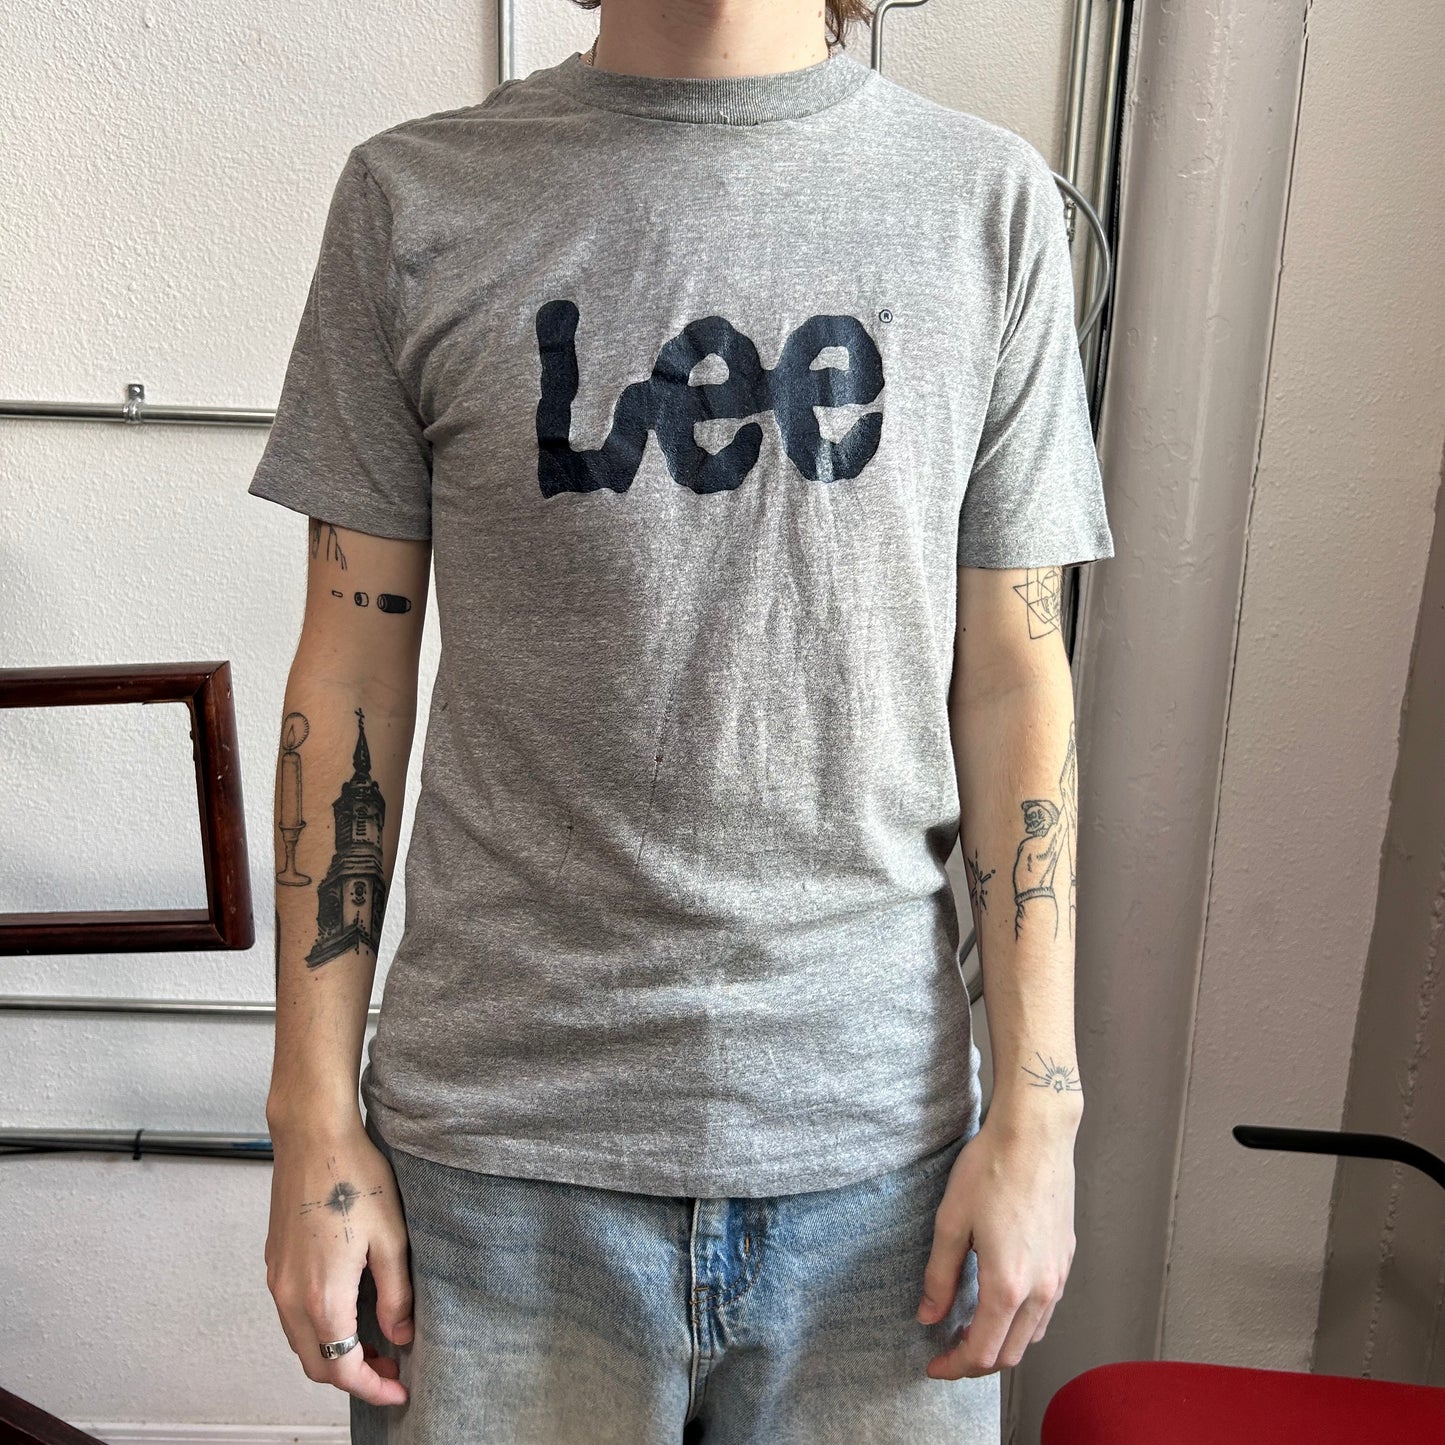 VTG Lee Shirt